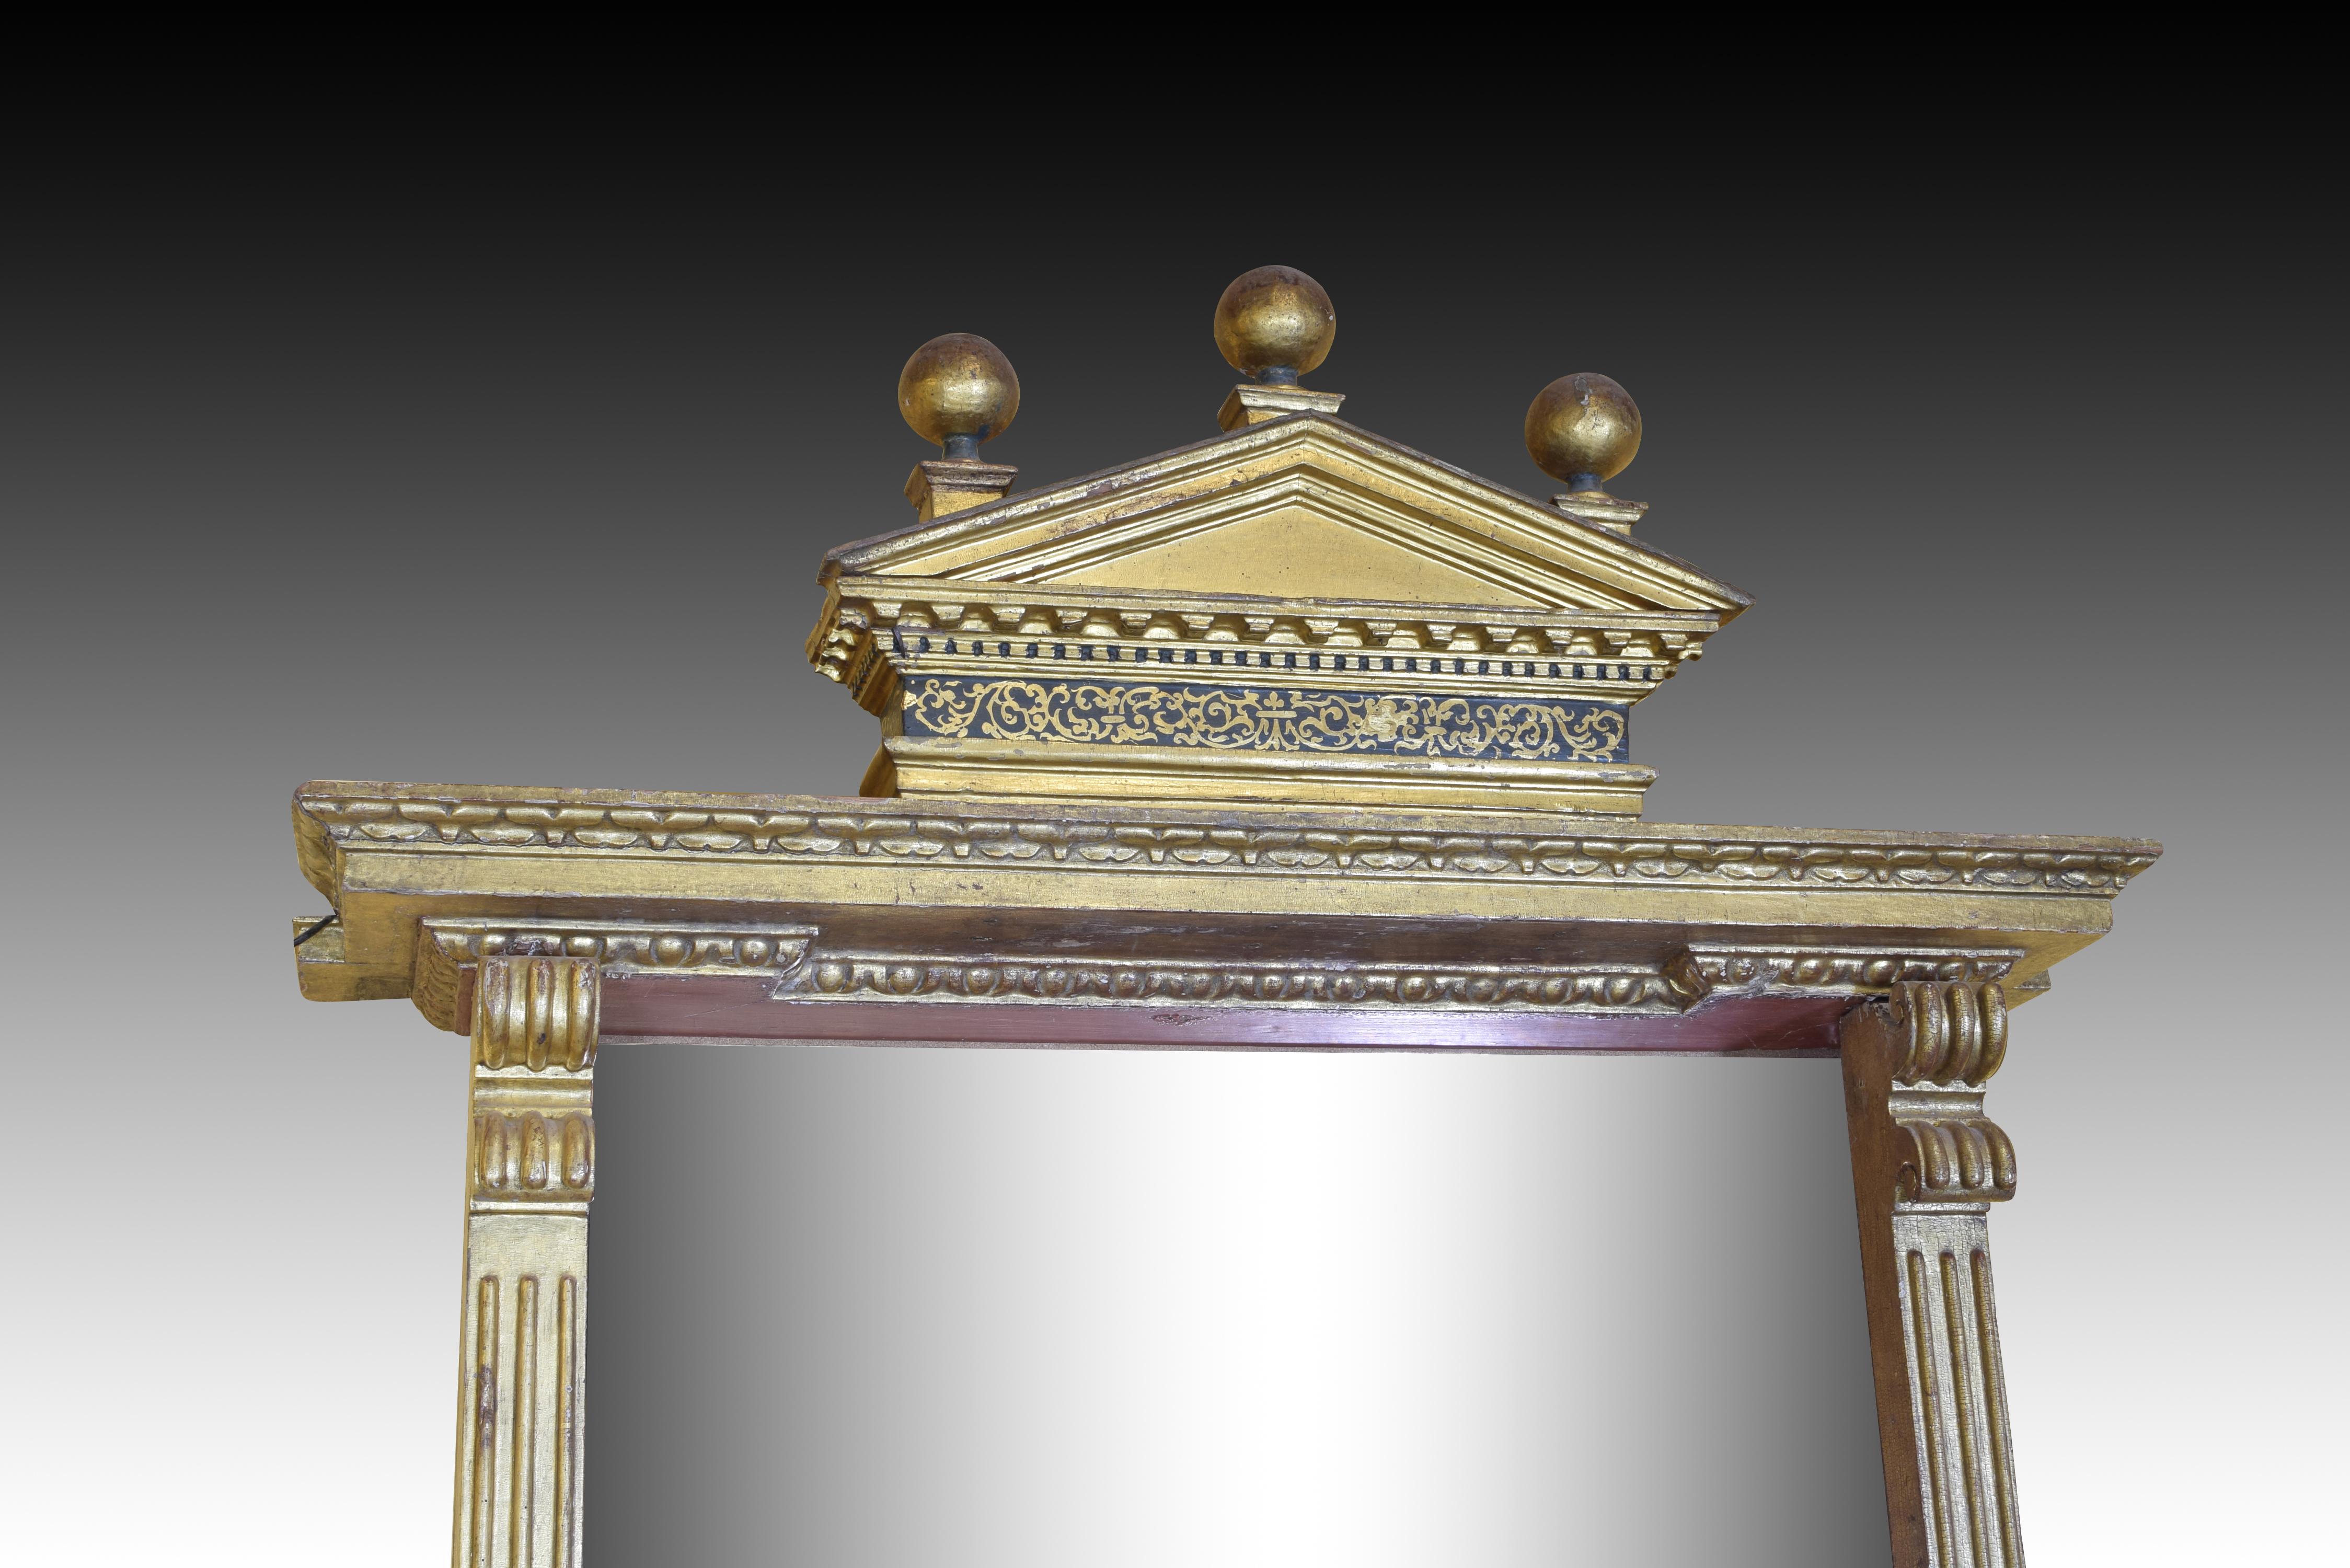 Cadre en bois sculpté, polychrome et doré réalisé avec différents éléments d'influence Renaissance marquée, aboutissant à une composition architecturale avec une base décalée, deux pilastres nervurés avec volutes sur les côtés et un sommet supérieur